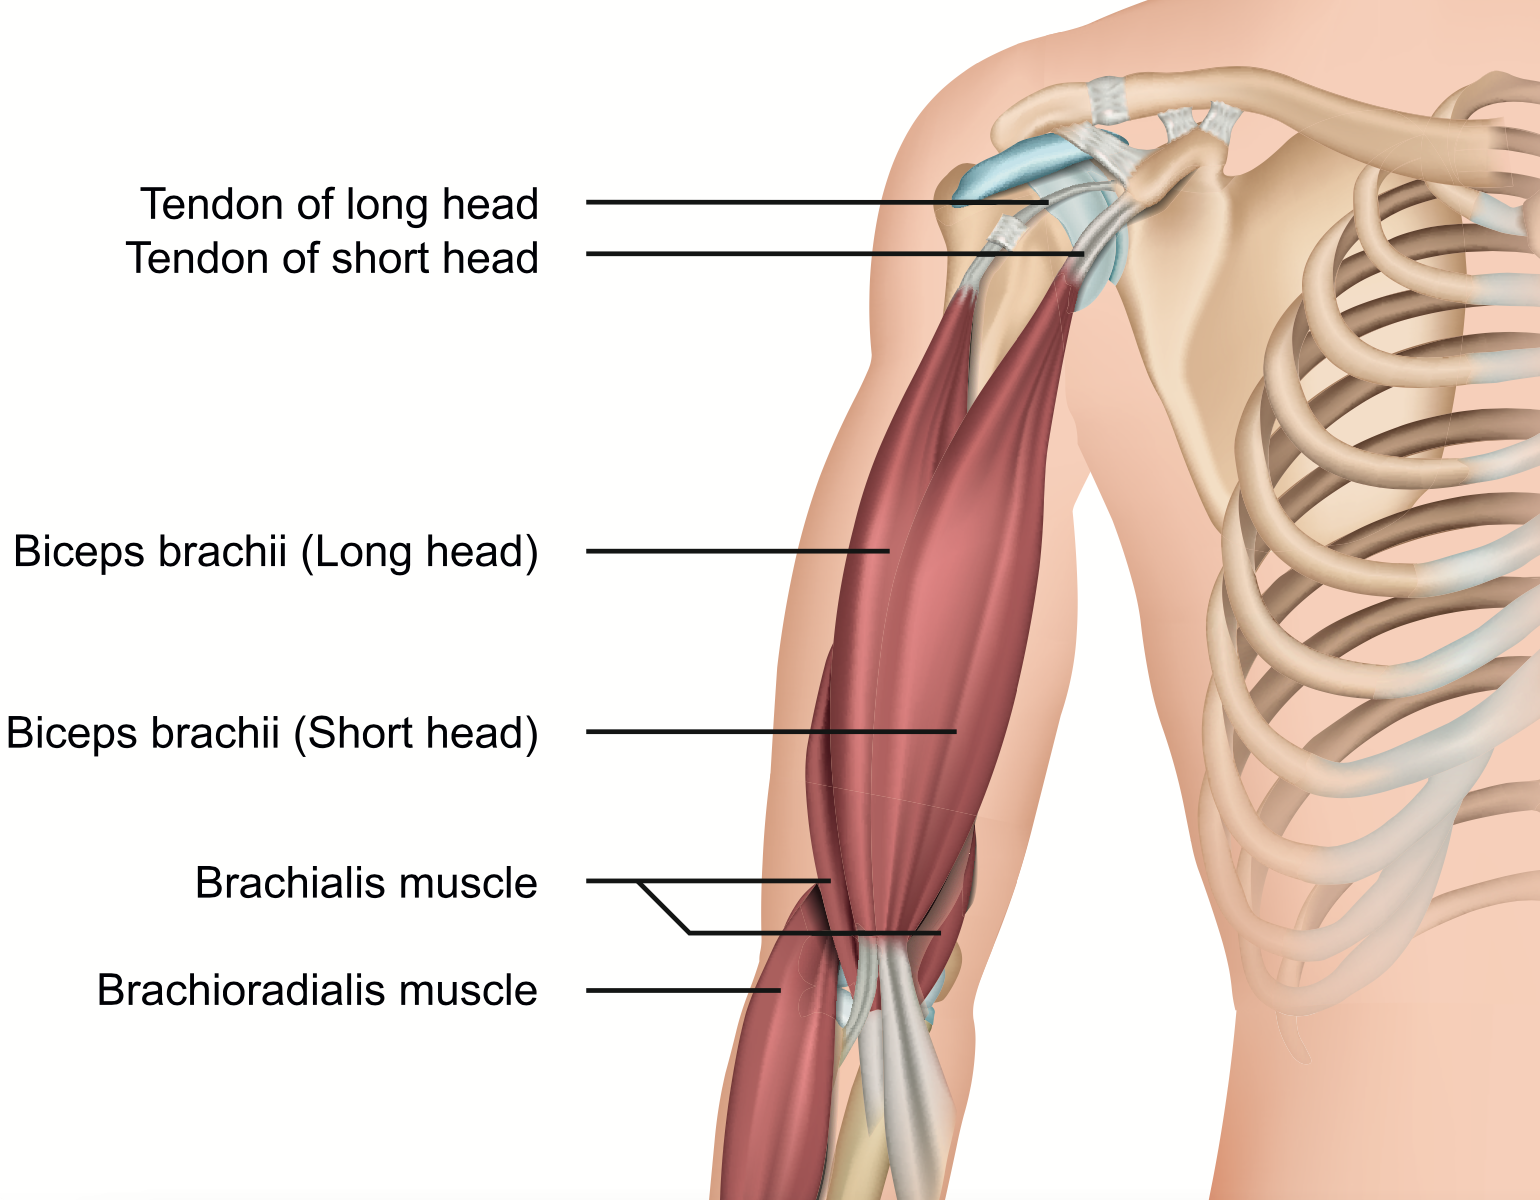 biceps brachii anatomy